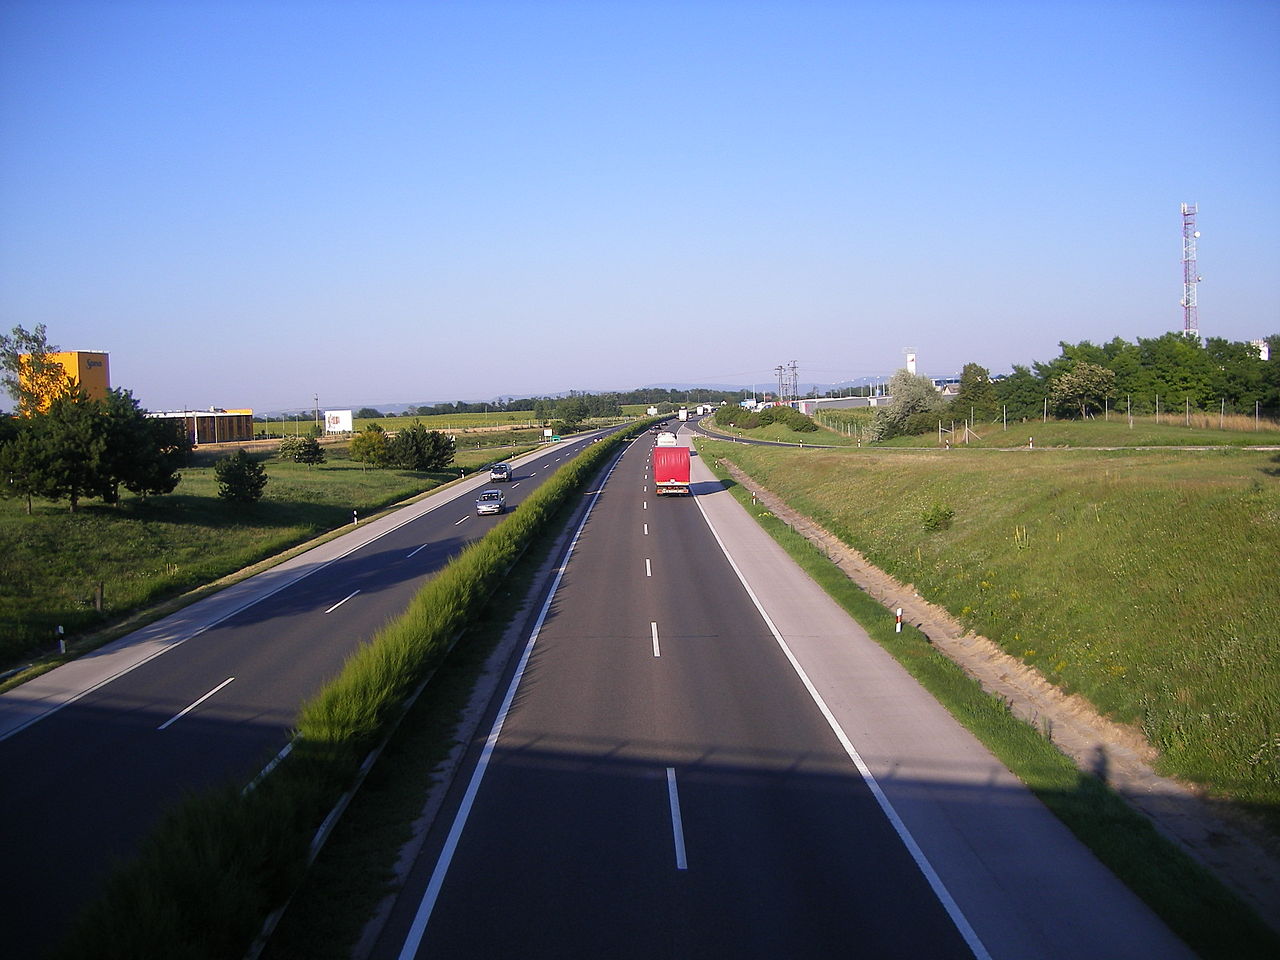 Március közepétől augusztusig folyamatos korlátozásokra kell számítani az M1-es autópályán a szakaszos burkolatfelújítások miatt (fotó: Wikipedia)